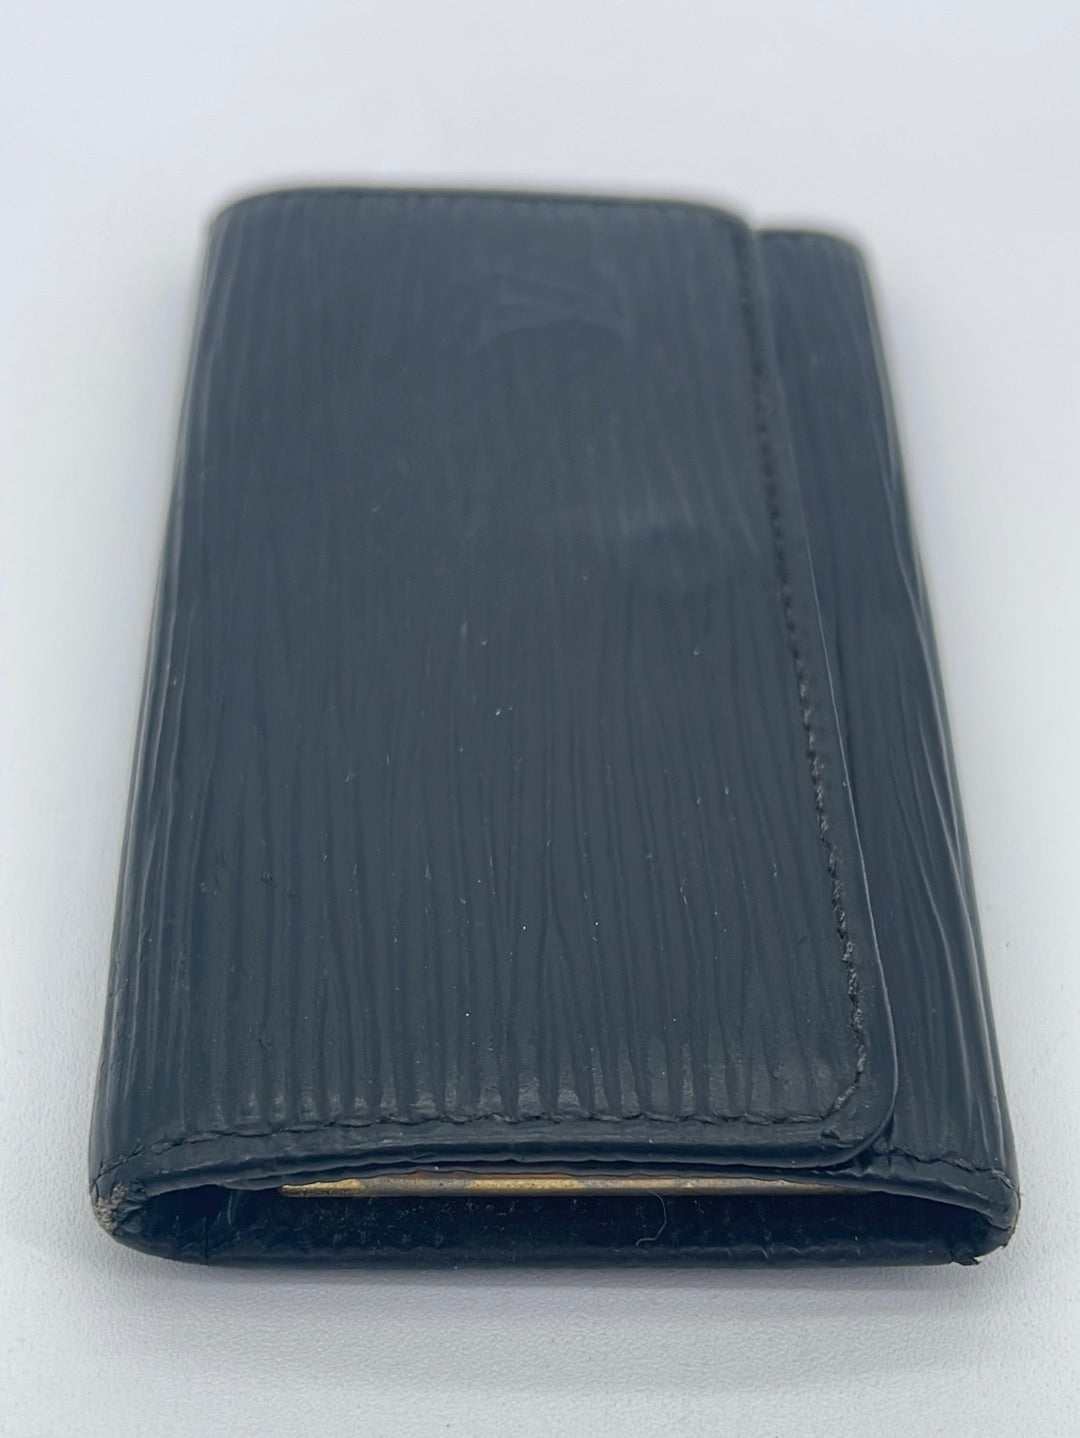 Preloved Louis Vuitton Black Epi 4 Key Holder CA1021 052223- $40 OFF LIVE SHOW